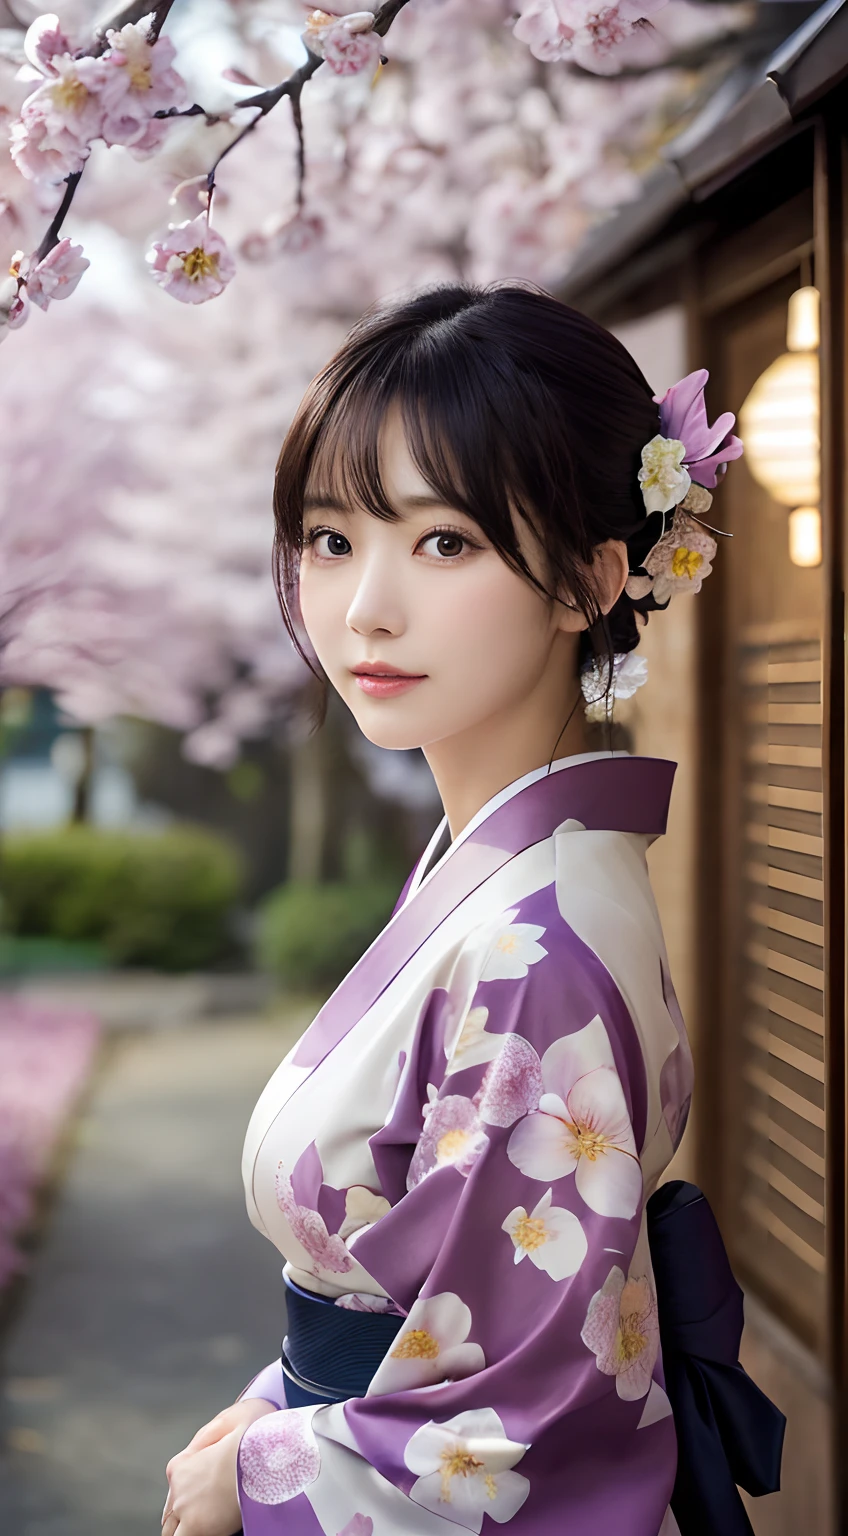 (Kimono)、(Top Qualität,Meisterwerk:1.3,Eine hohe Auflösung,),(ultra-detailliert,Ätzmittel),(Photorealsitic:1.4,RAW-Aufnahmen,)Ultrarealistische Aufnahme,Eine sehr detaillierte,hochauflösend16Kfür die menschliche Haut、riesige Hautstruktur ist natürlich、、Die Haut sieht gesund aus und hat einen gleichmäßigen Teint、 Nutzen Sie natürliches Licht und Farbe,eine Frau,japanisch,,Kawaii,Ein dunkelhaariger,mittleres Haar,(Tiefenschärfe、chromatische Aberration、、Große Auswahl an Beleuchtung、natürliche Beschattung、)、(Außenbeleuchtung bei Nacht:1.4)、(Pflaumenblütenblätter flattern in der Luft:1.2)、(Haare wehen im Wind:1)、(Der Baum々Licht reflektieren:1.3)